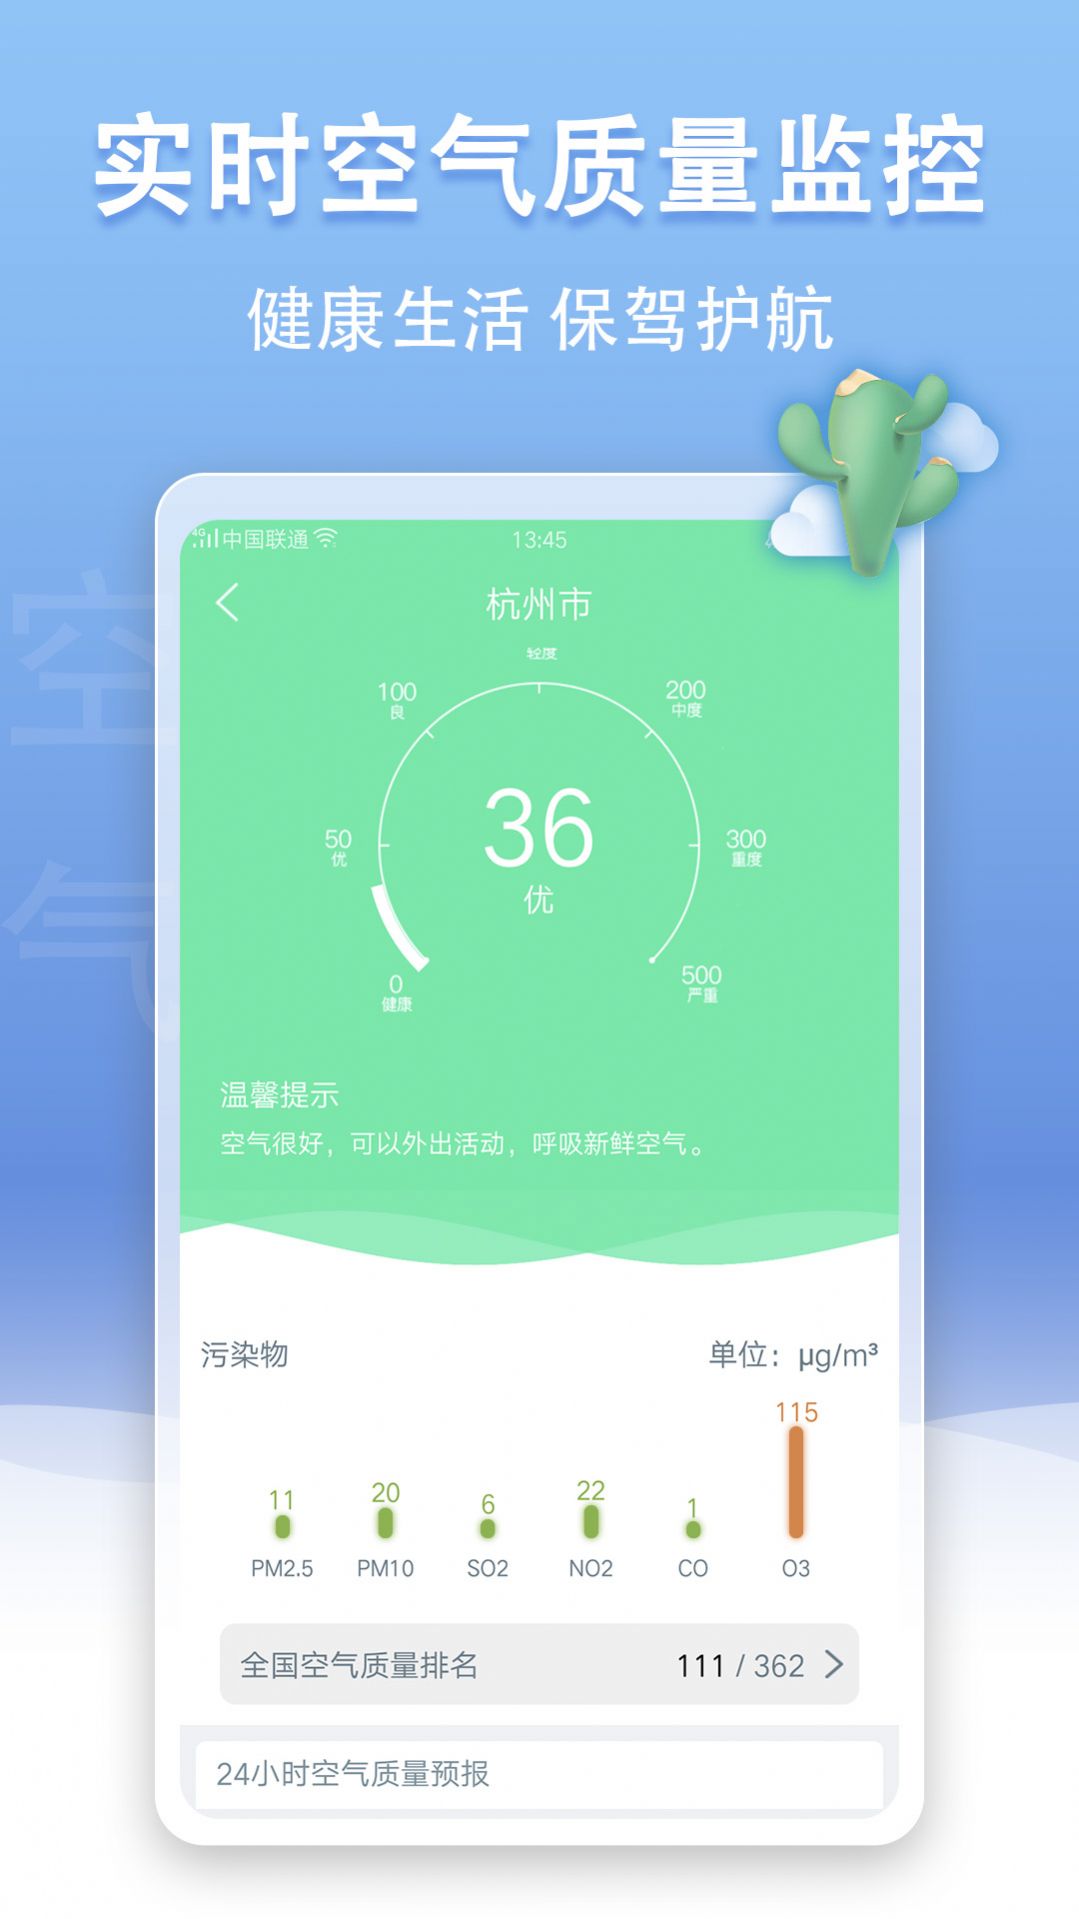 尚影视频编辑安卓版丹东app开发选哪个